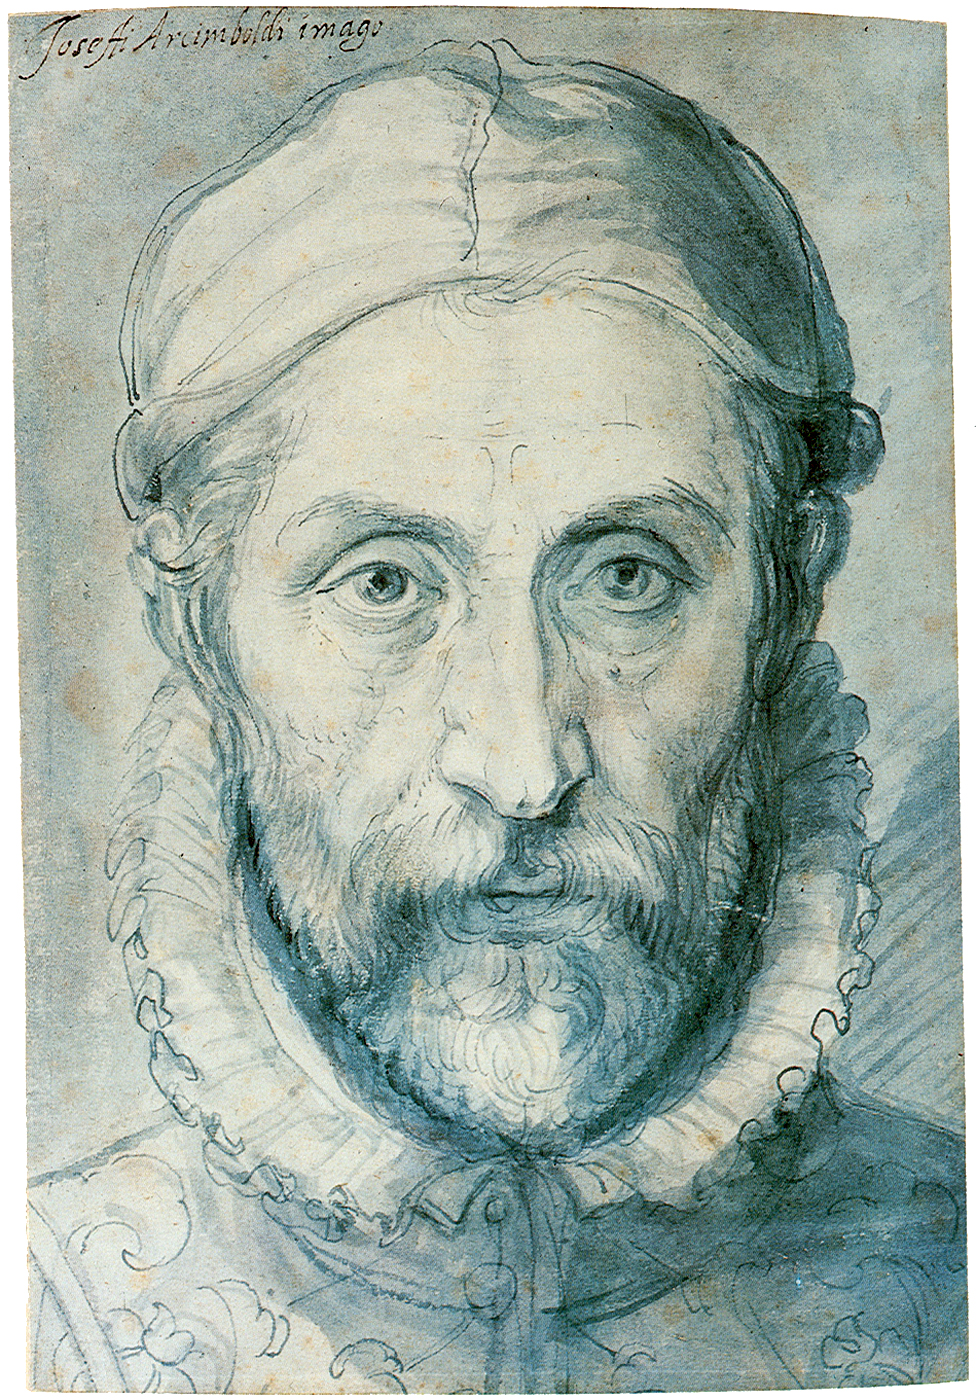 Giuseppe Arcimboldo - 1526/7 - juilliet 11, 1593